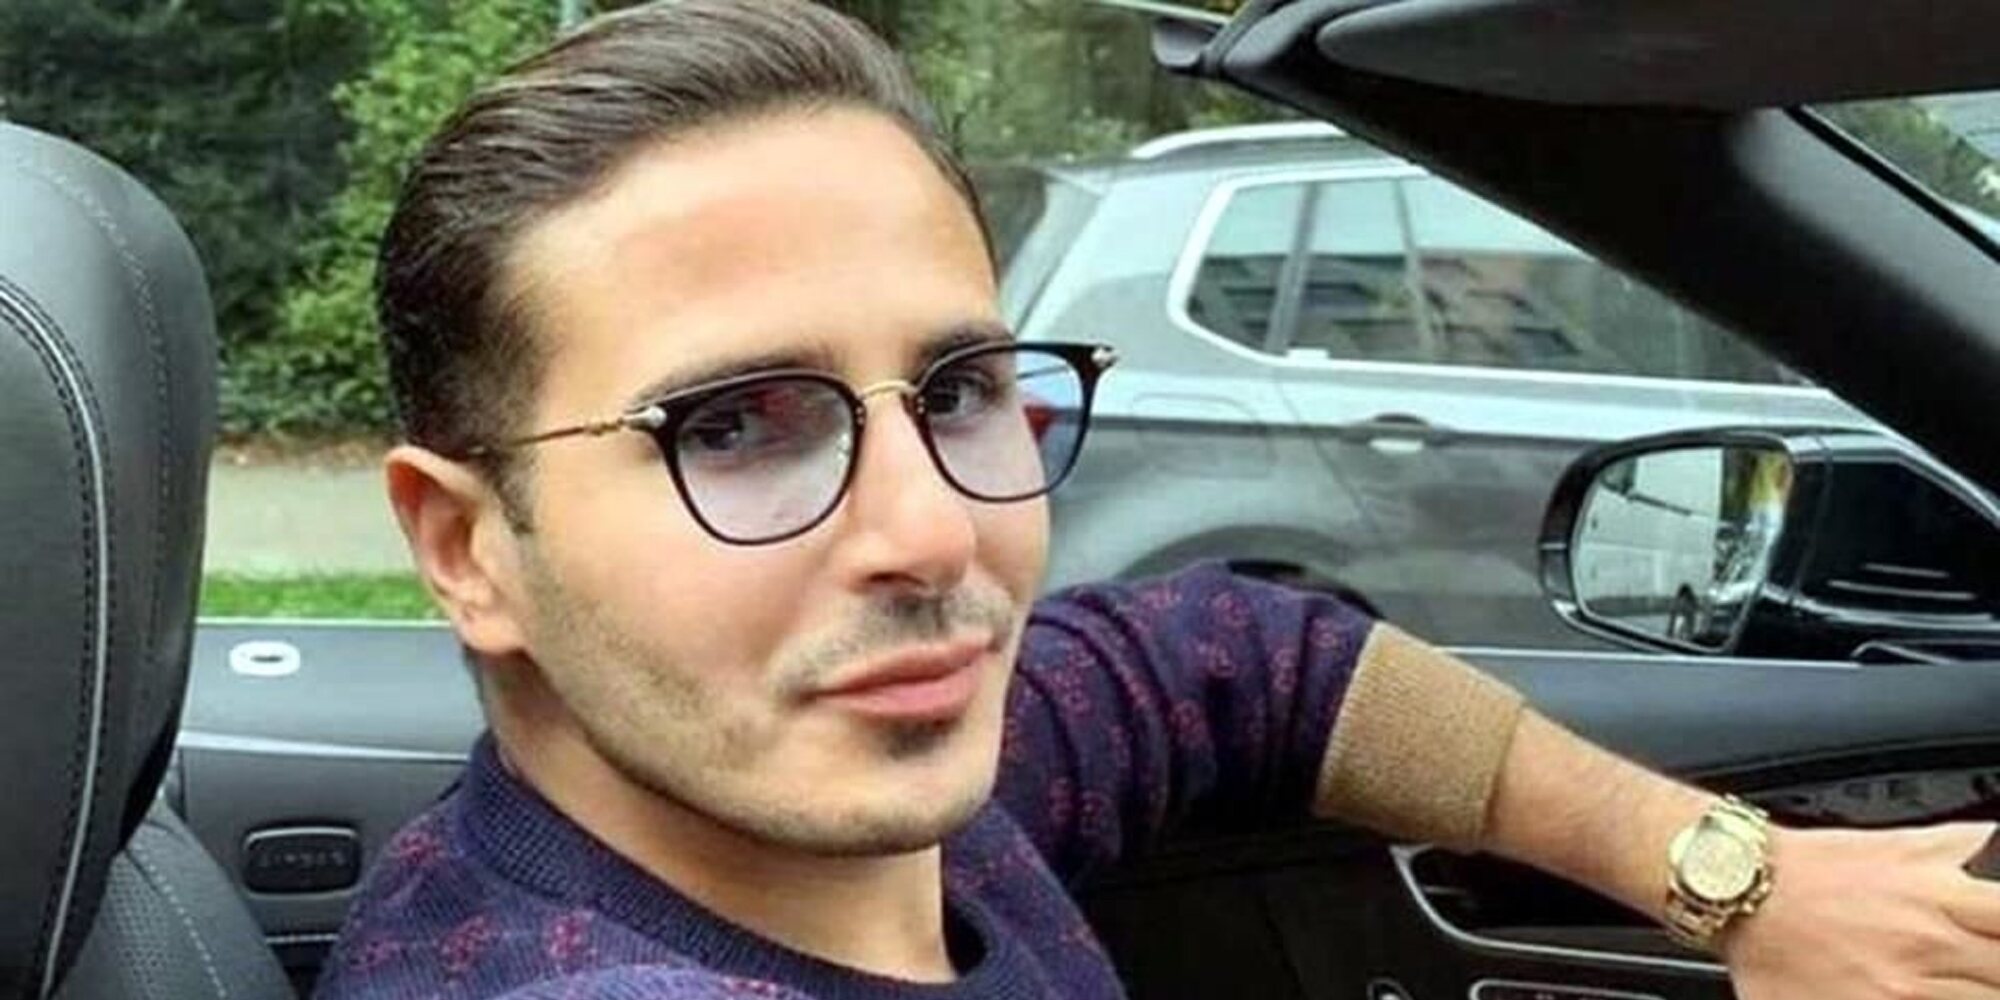 Simon Leviev, el timador de Tinder, podría ir a la cárcel en España por un delito cometido en 2019